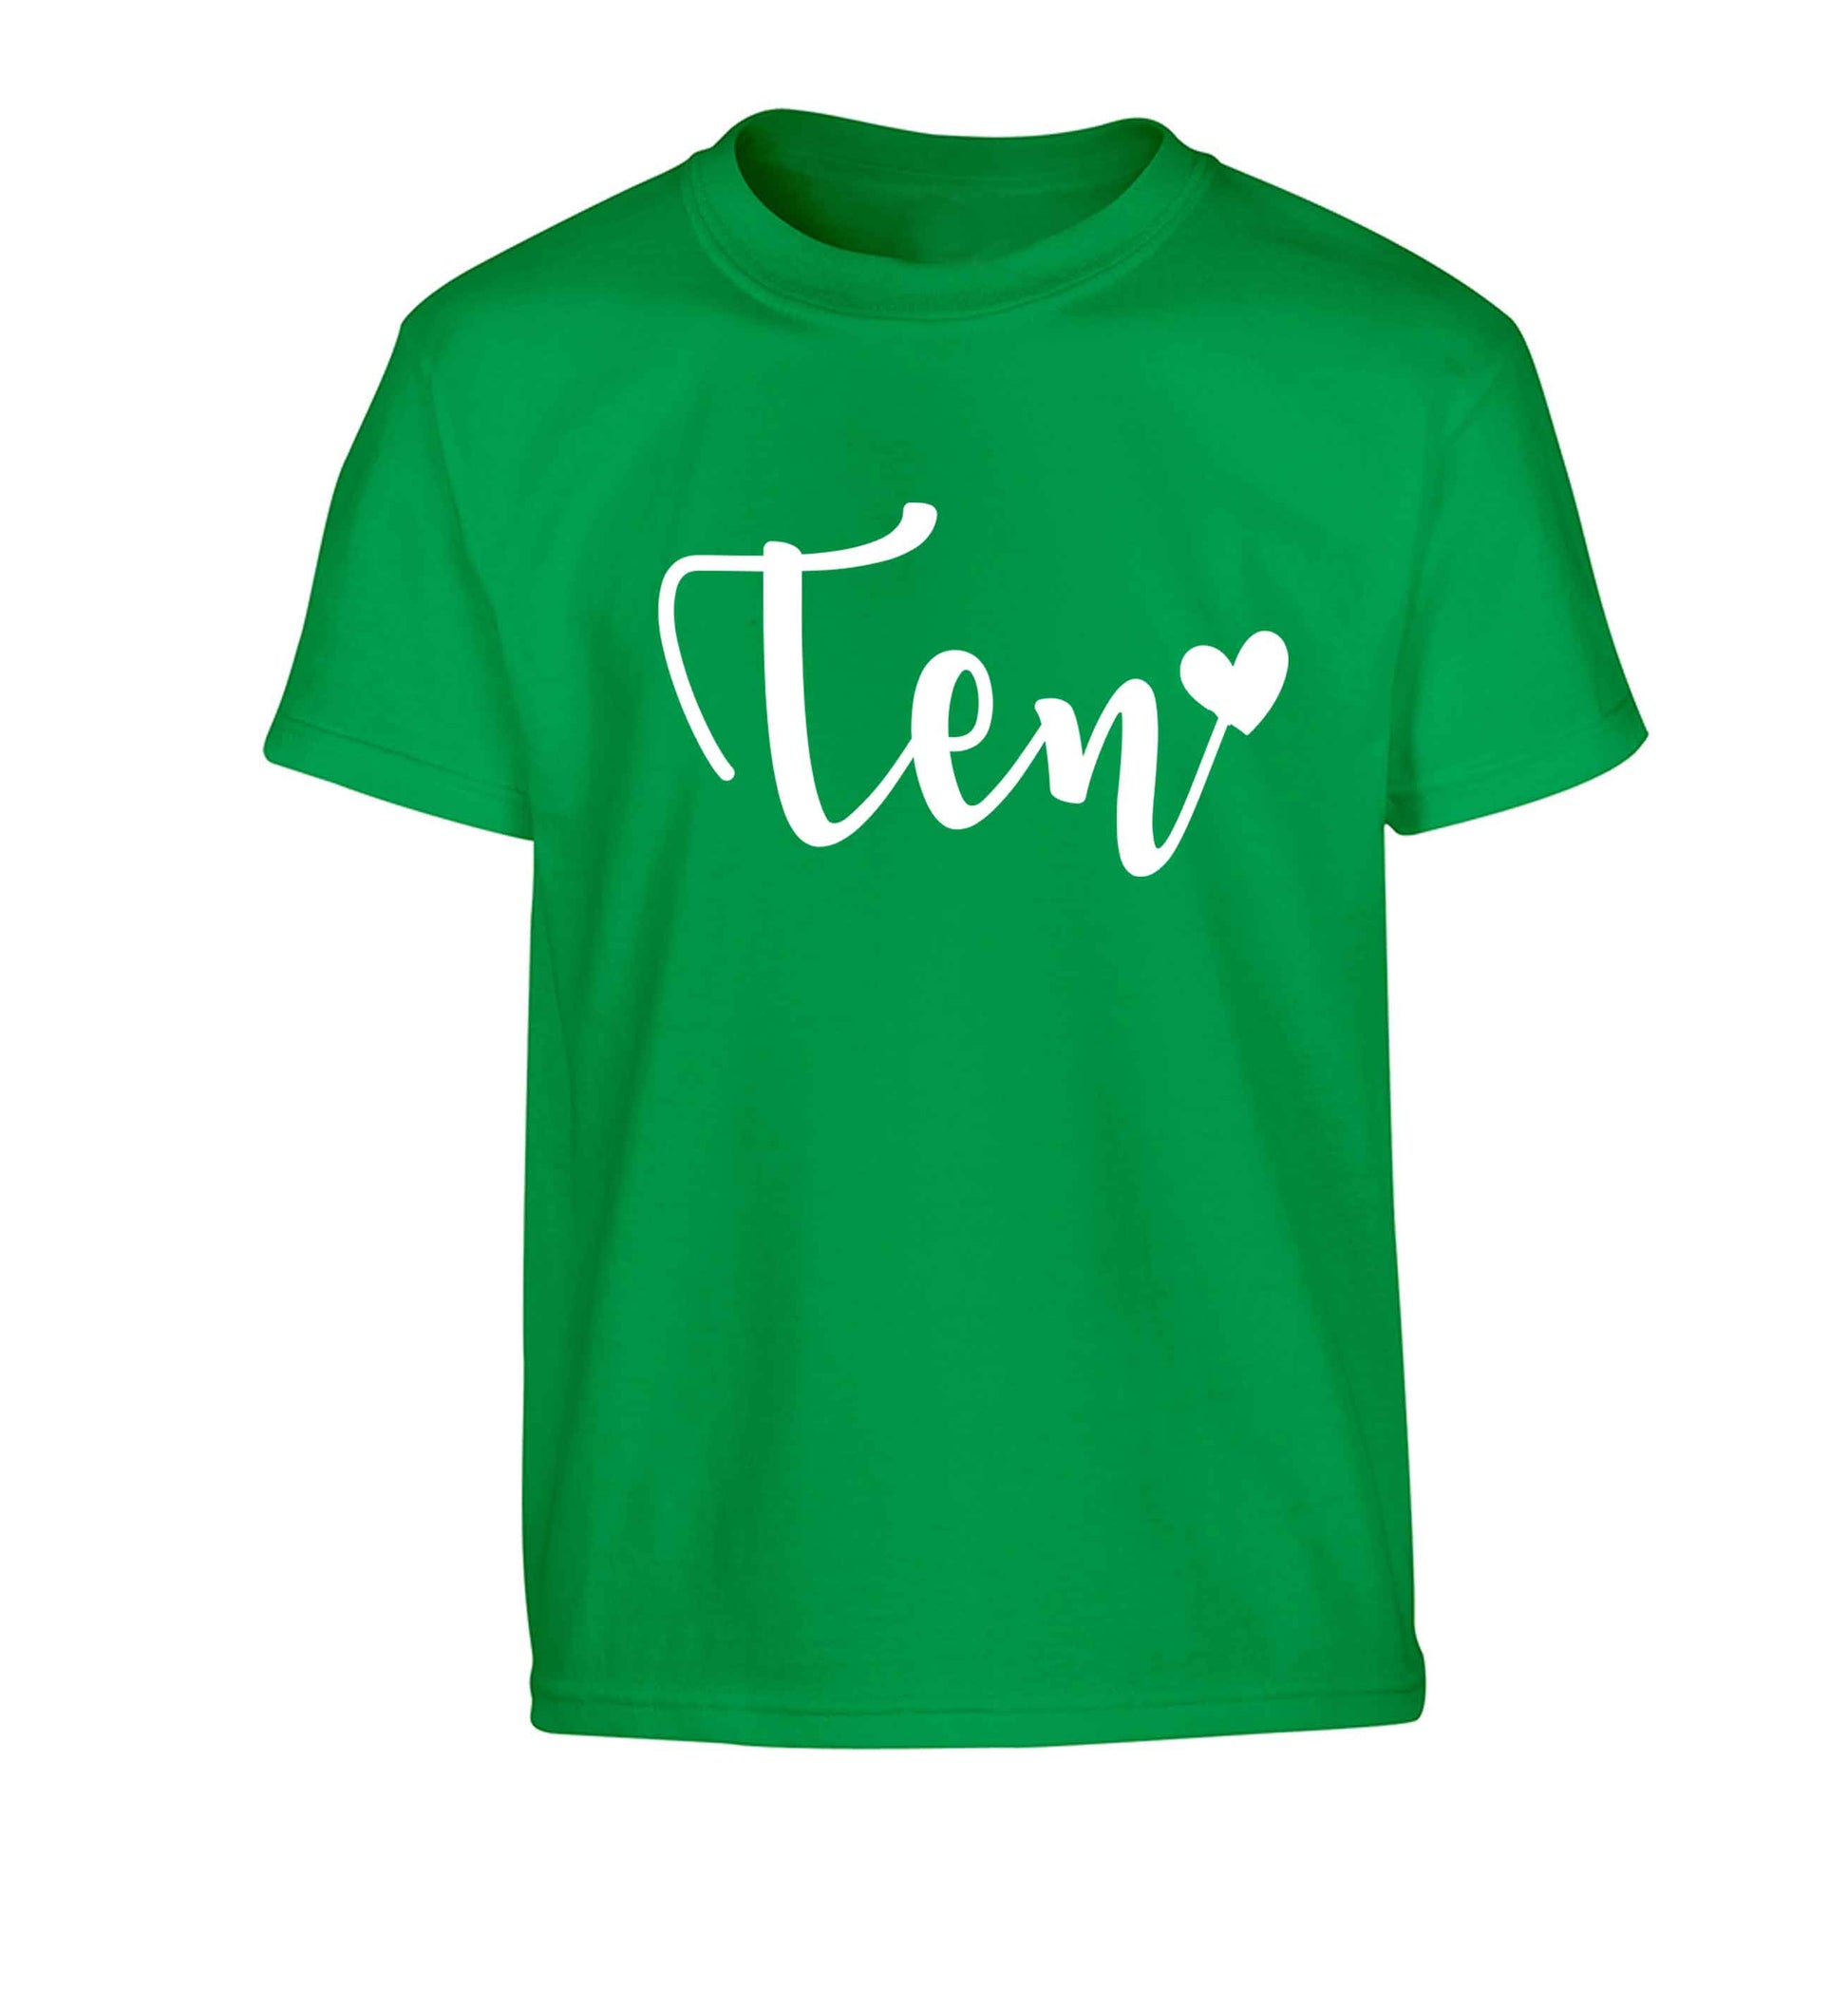 Ten and heart Children's green Tshirt 12-13 Years